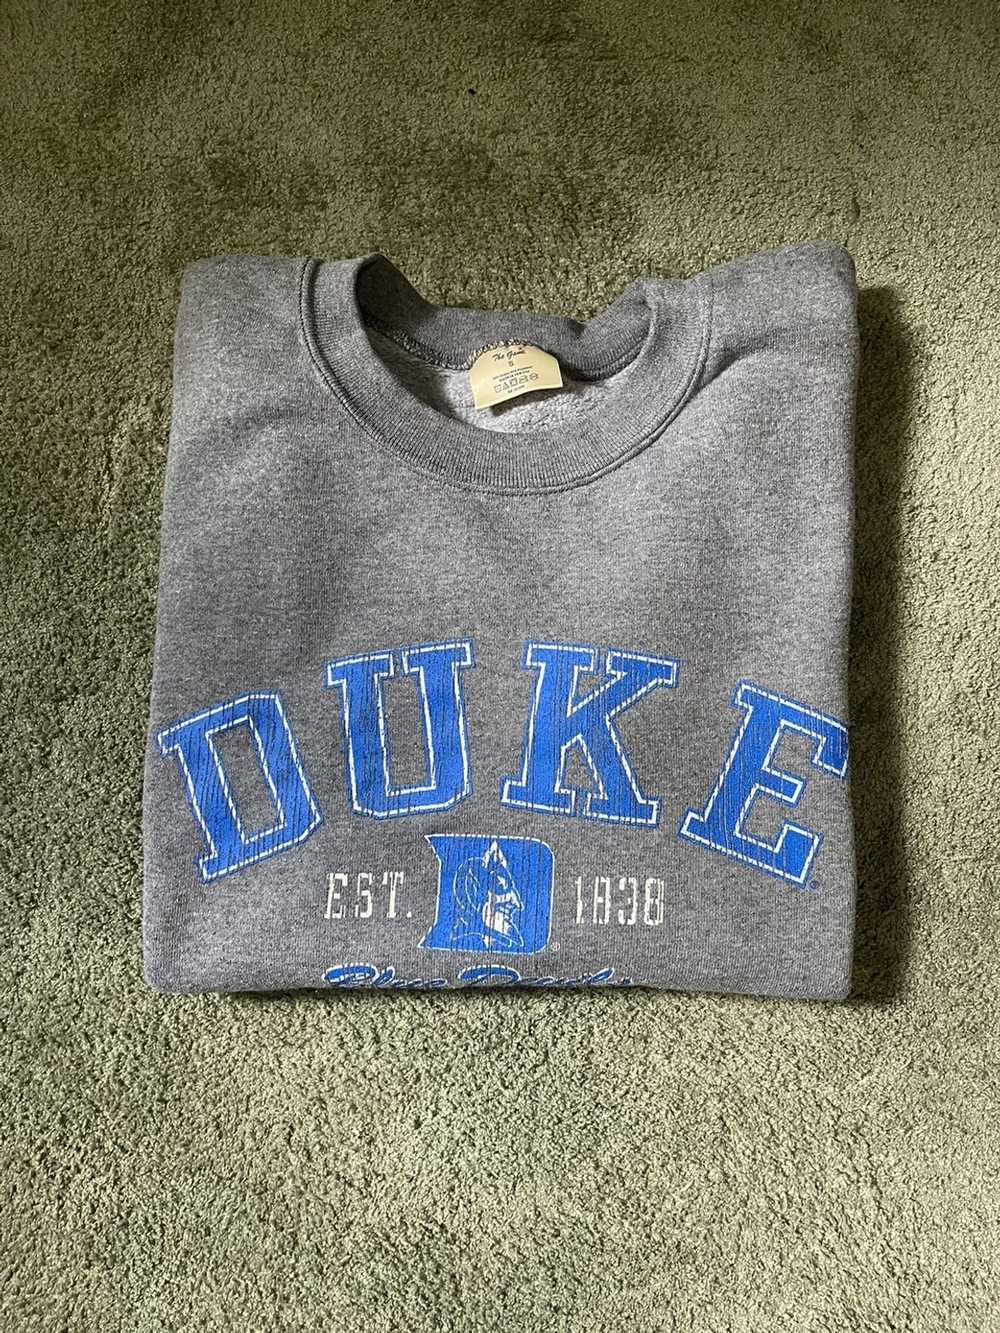 Vintage Vintage Duke Blue devils sweater - image 3